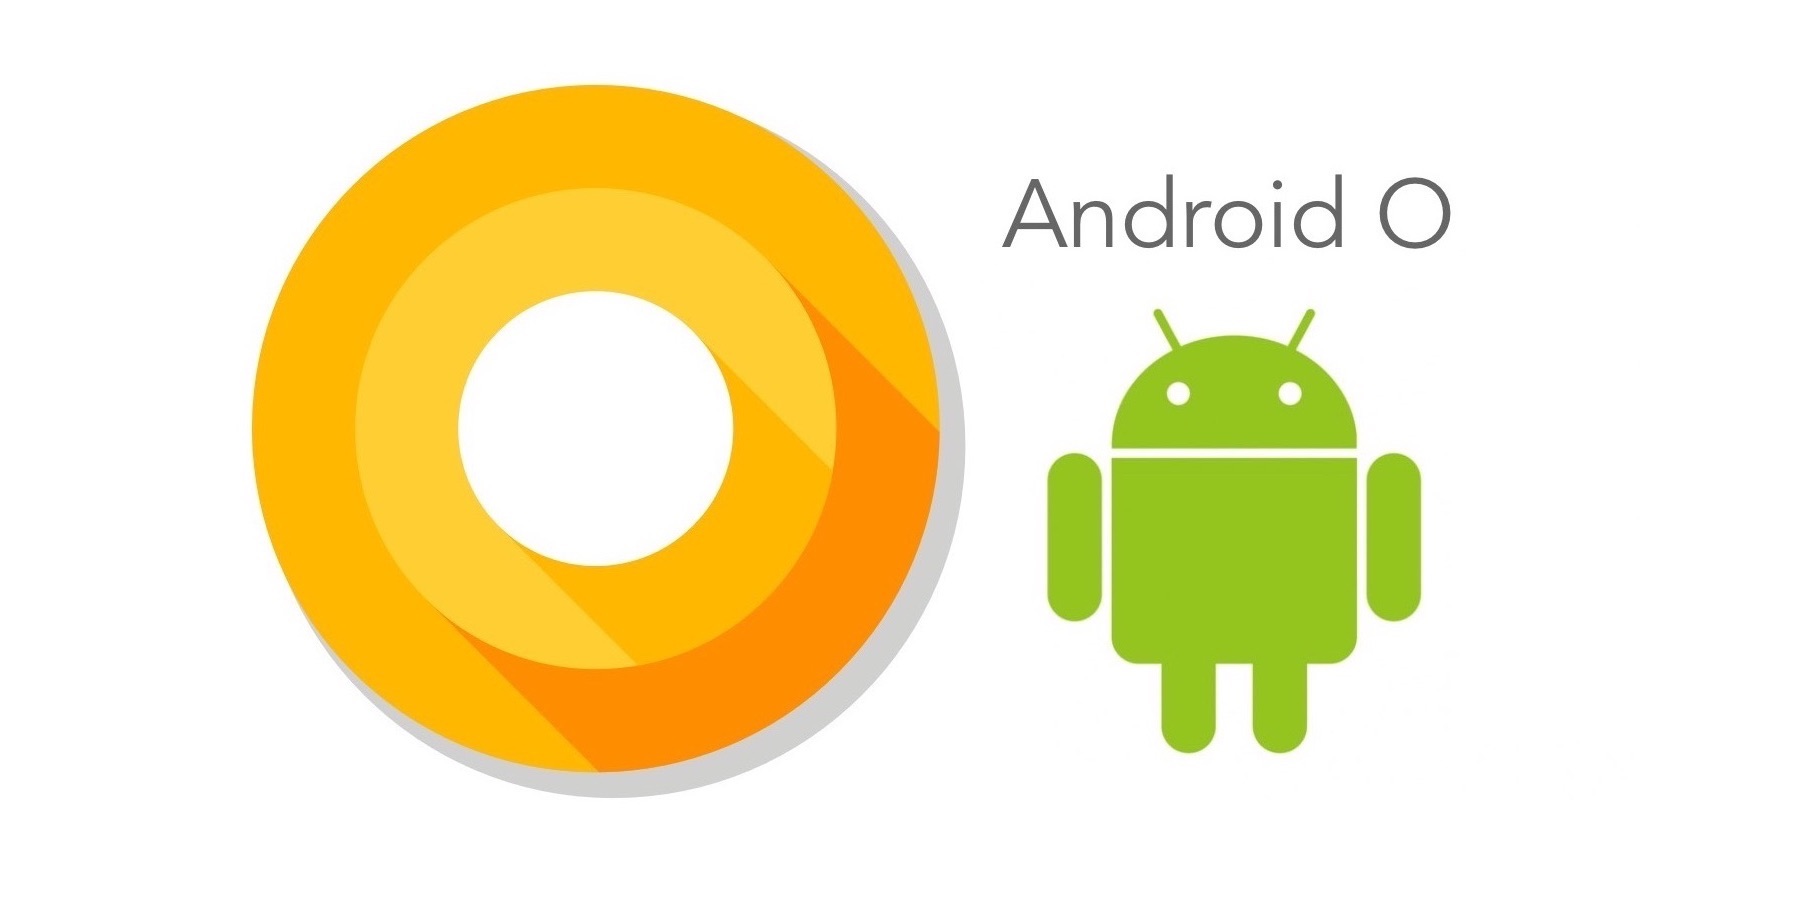 Google anuncia Android O Preview 4 lo que significa que pronto tendremos la version final